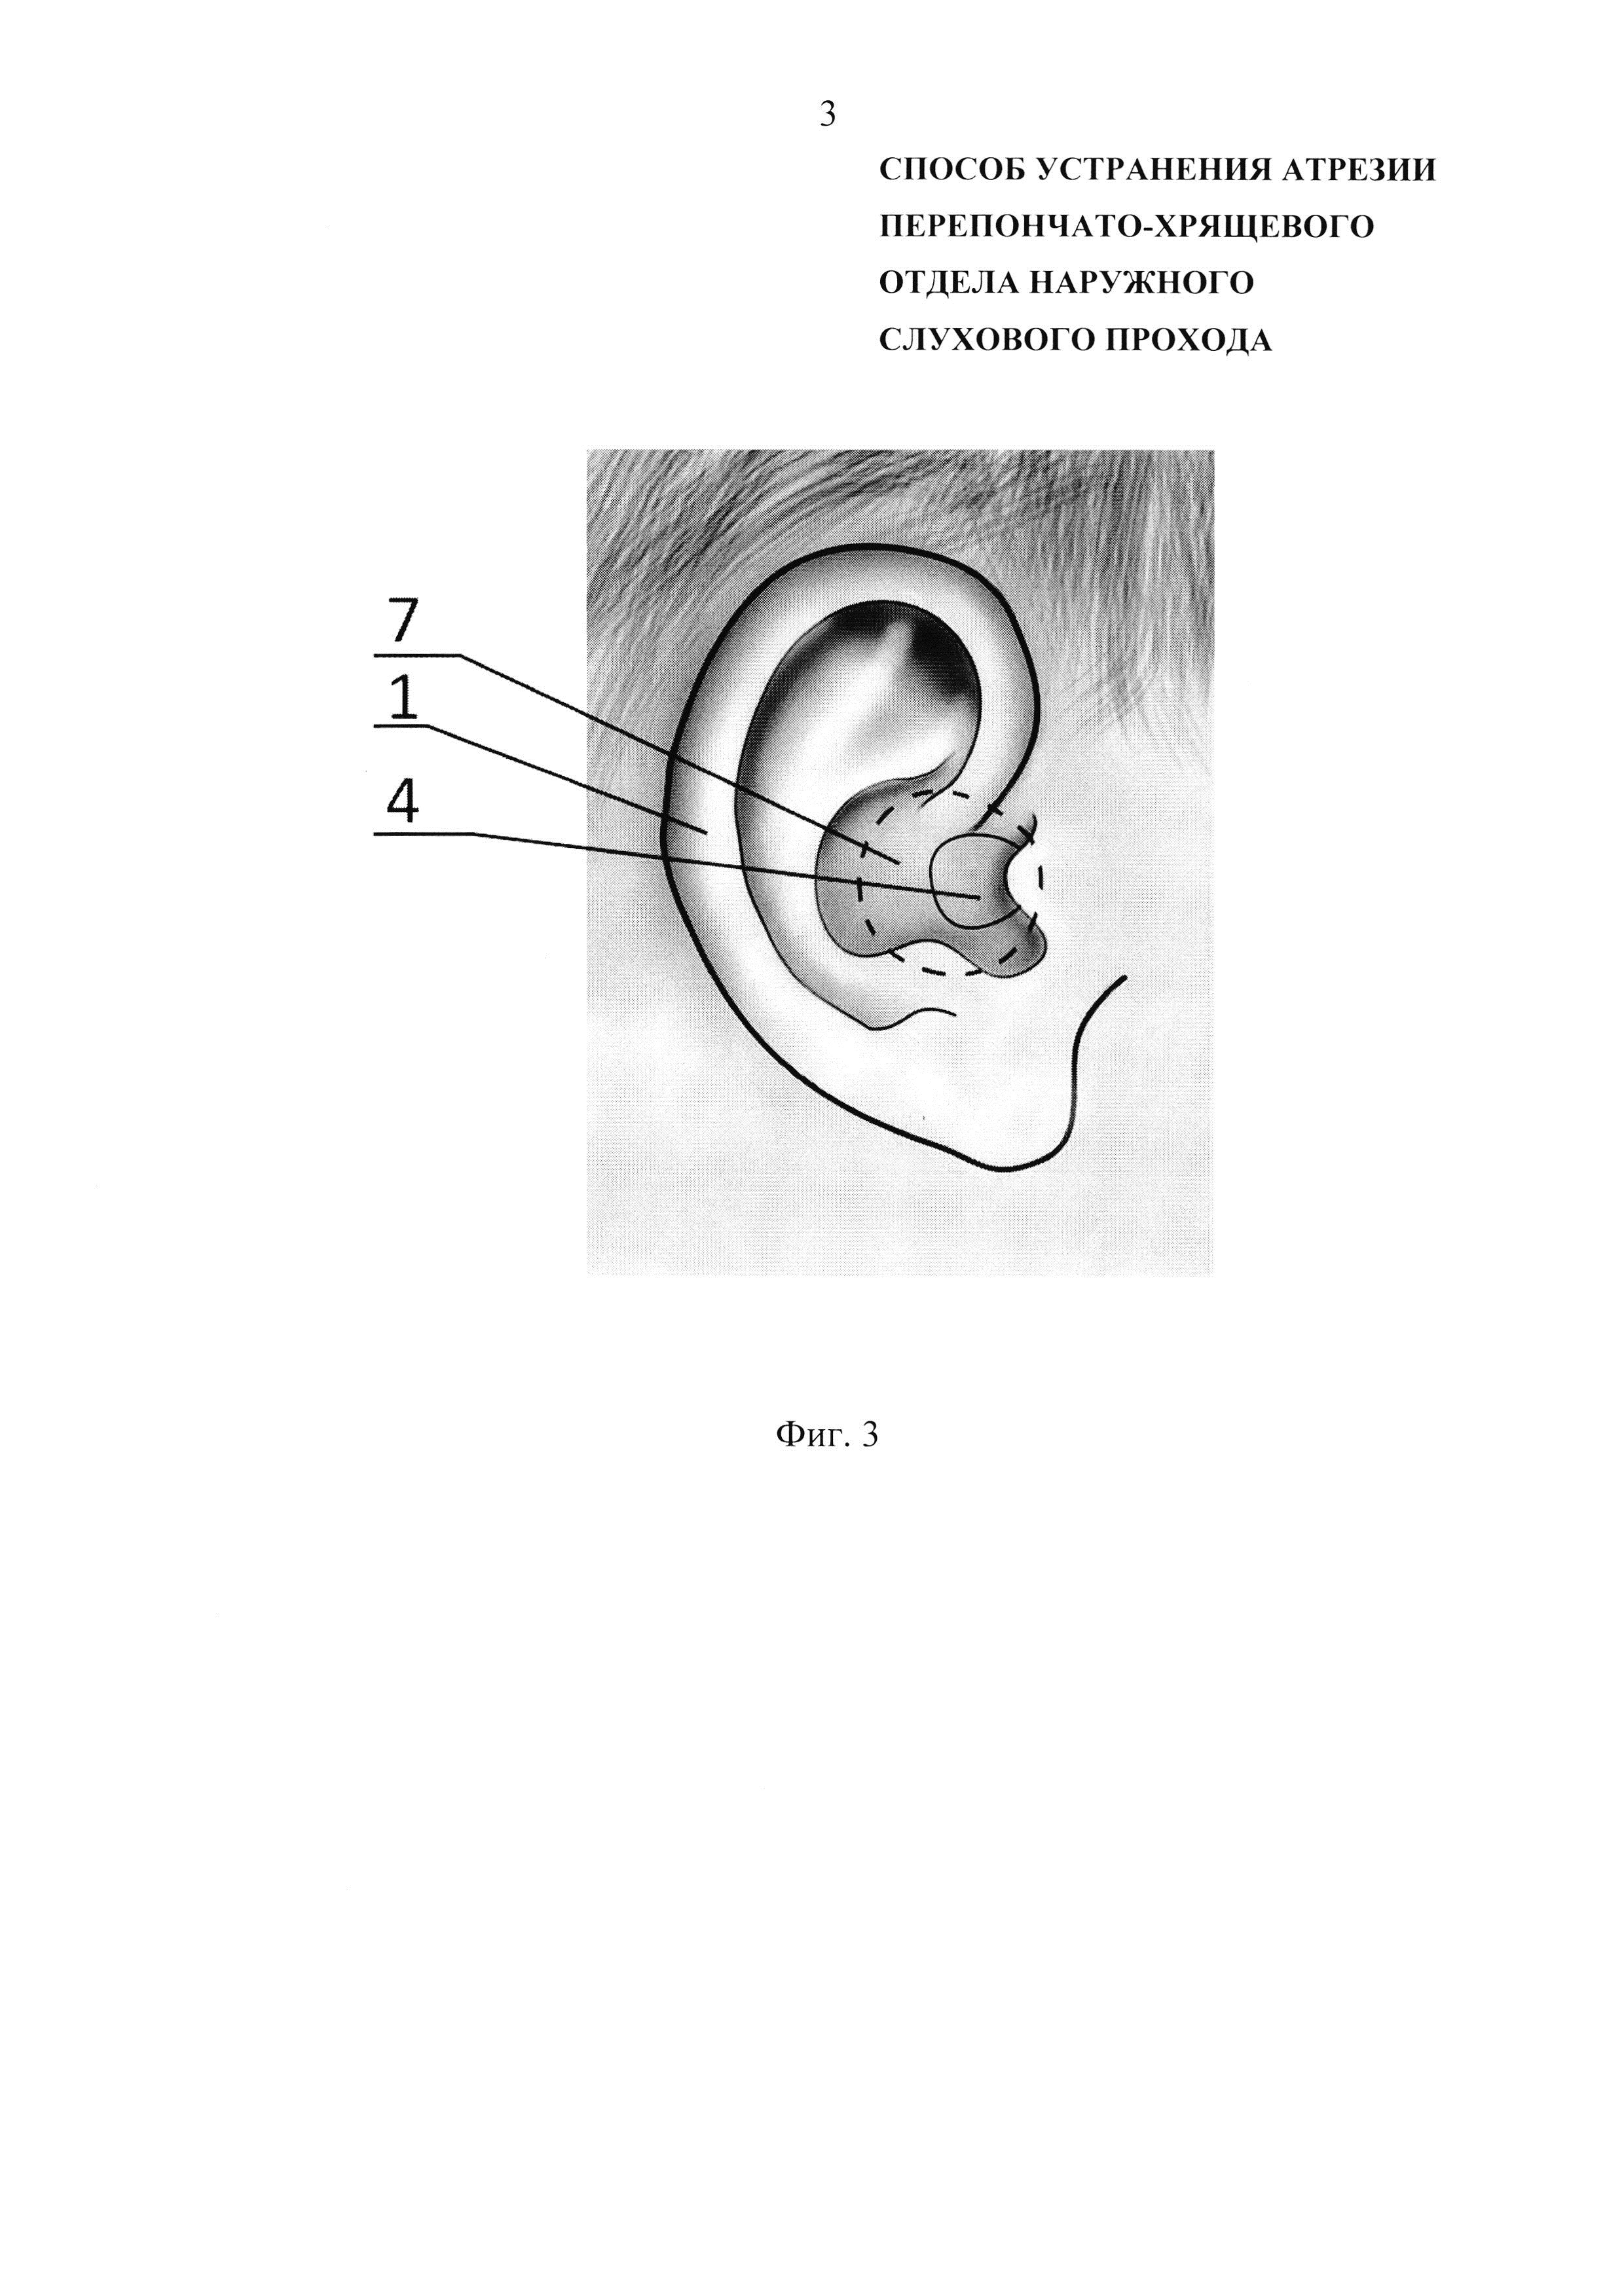 Способ устранения атрезии перепончато-хрящевого отдела наружного слухового прохода